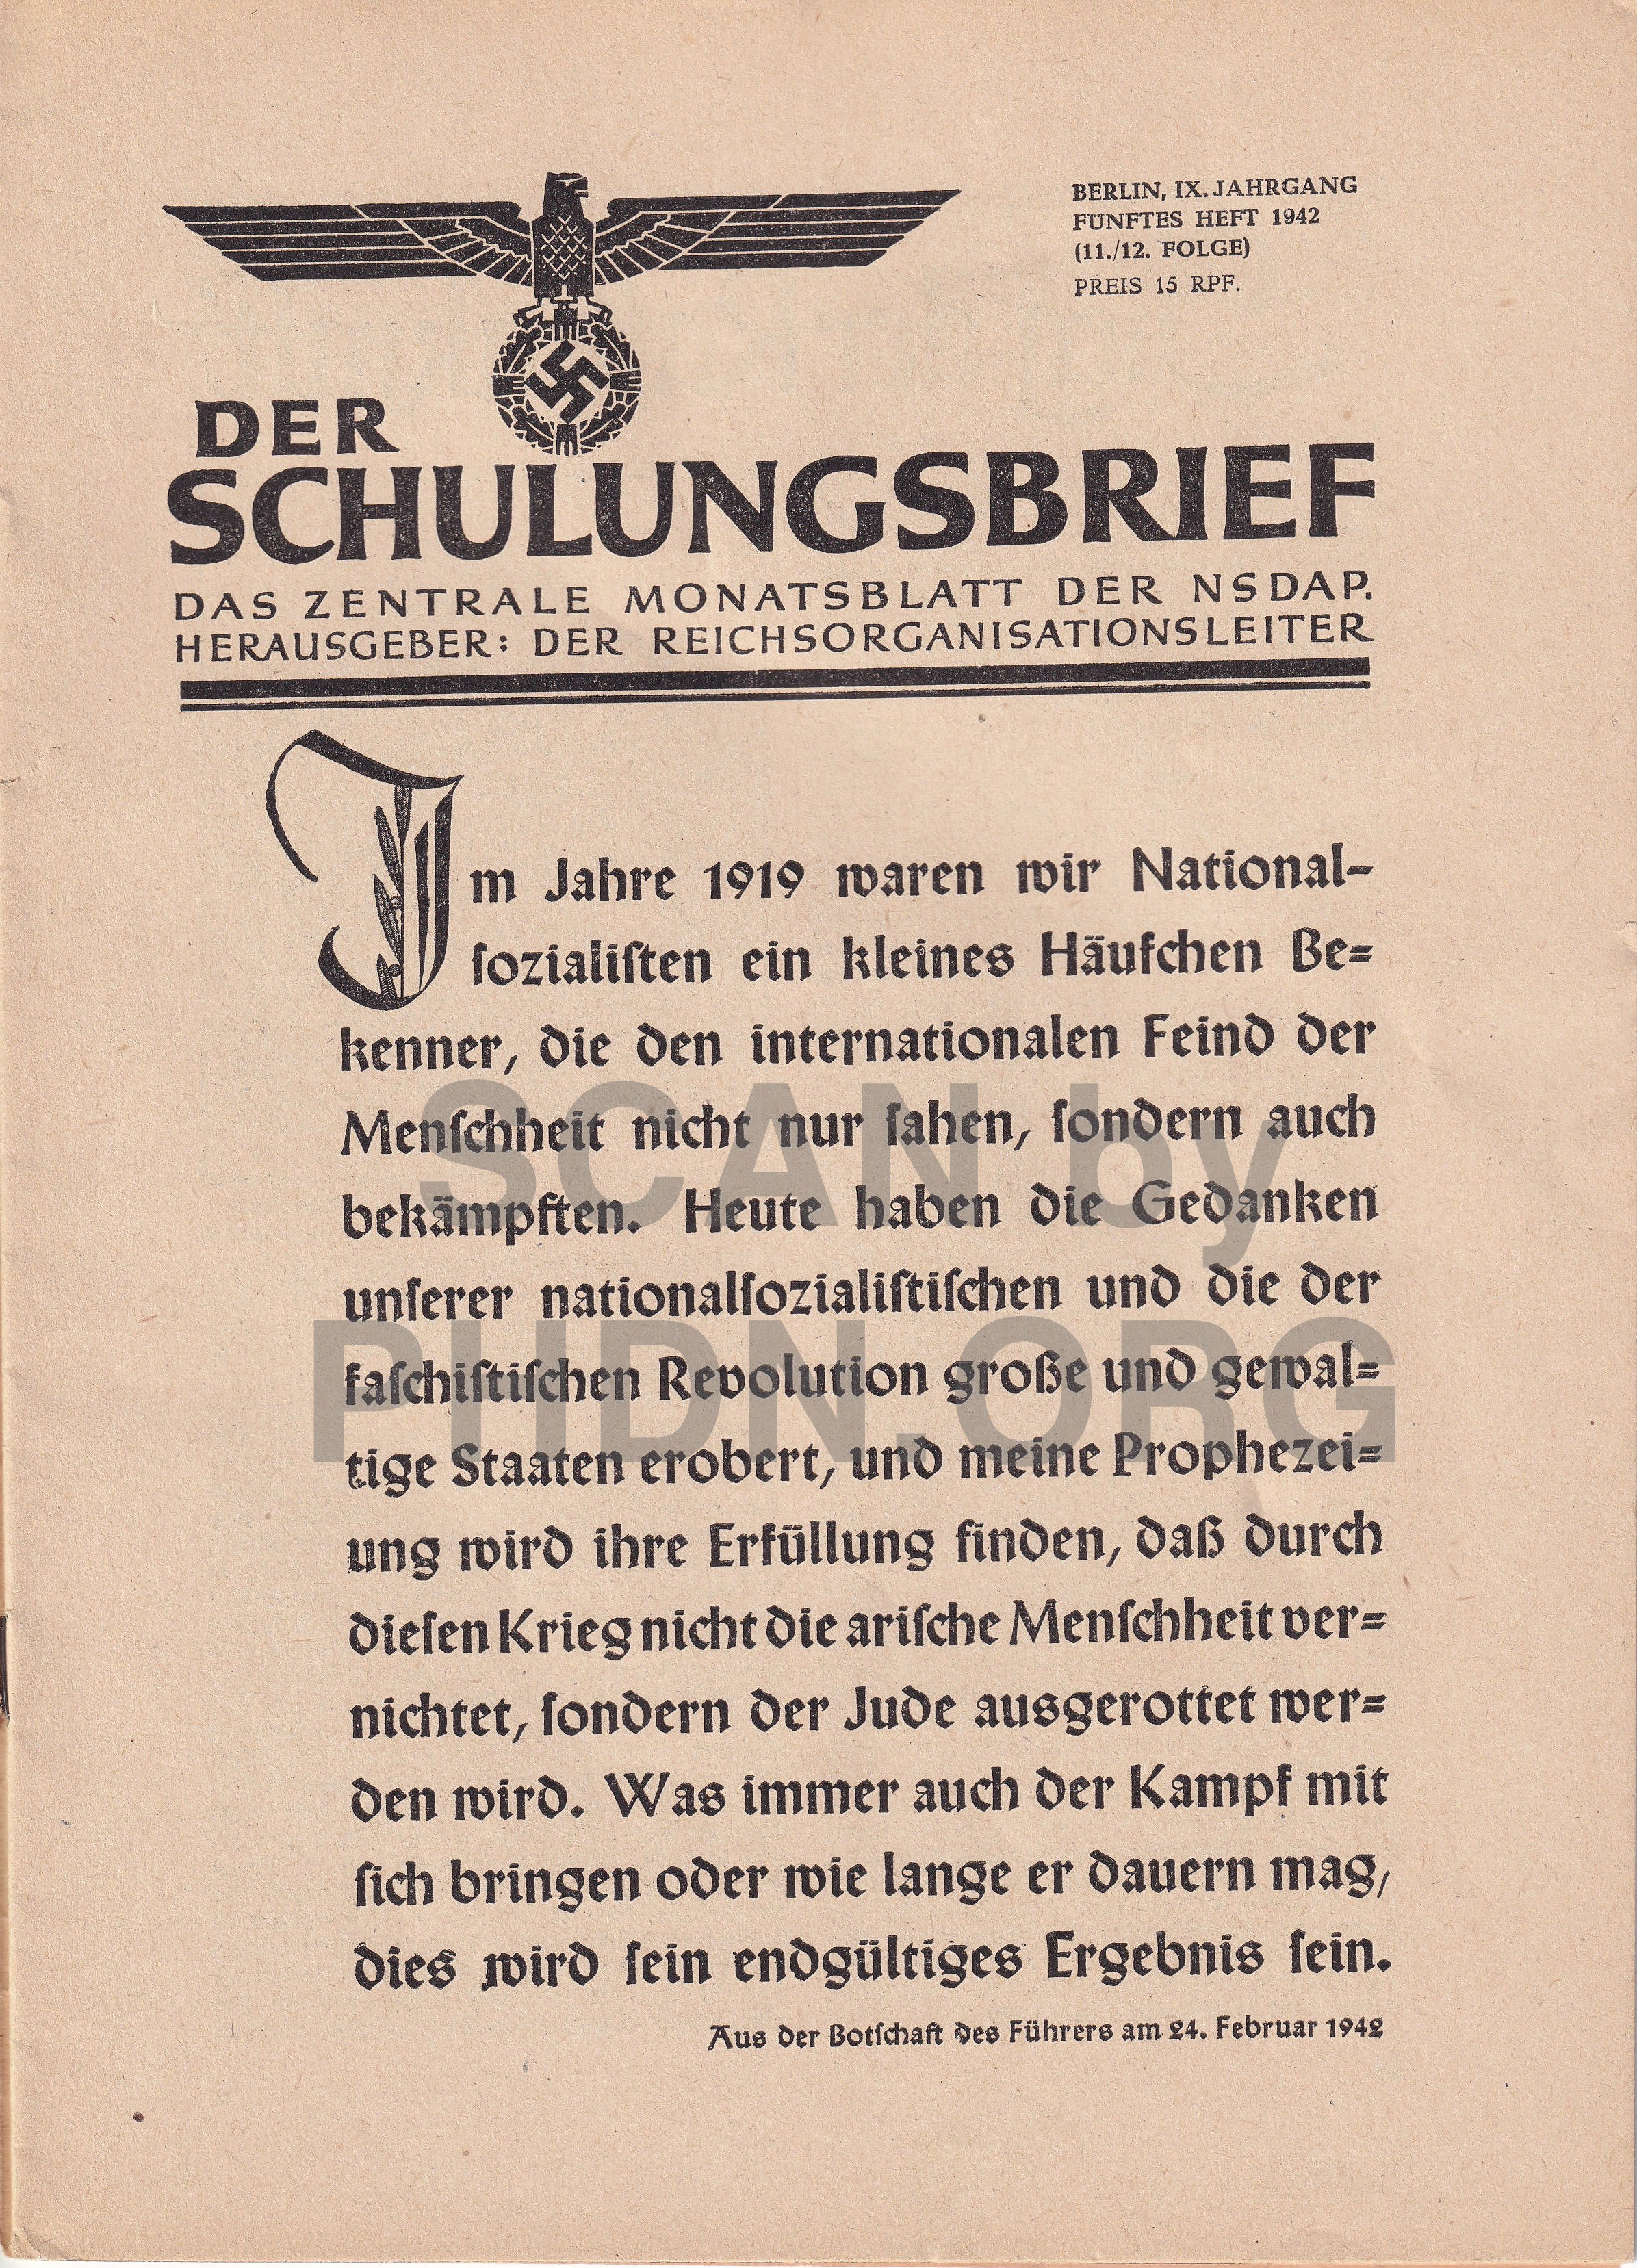 Poster publié dans Der Schulungsbrief numéro 5